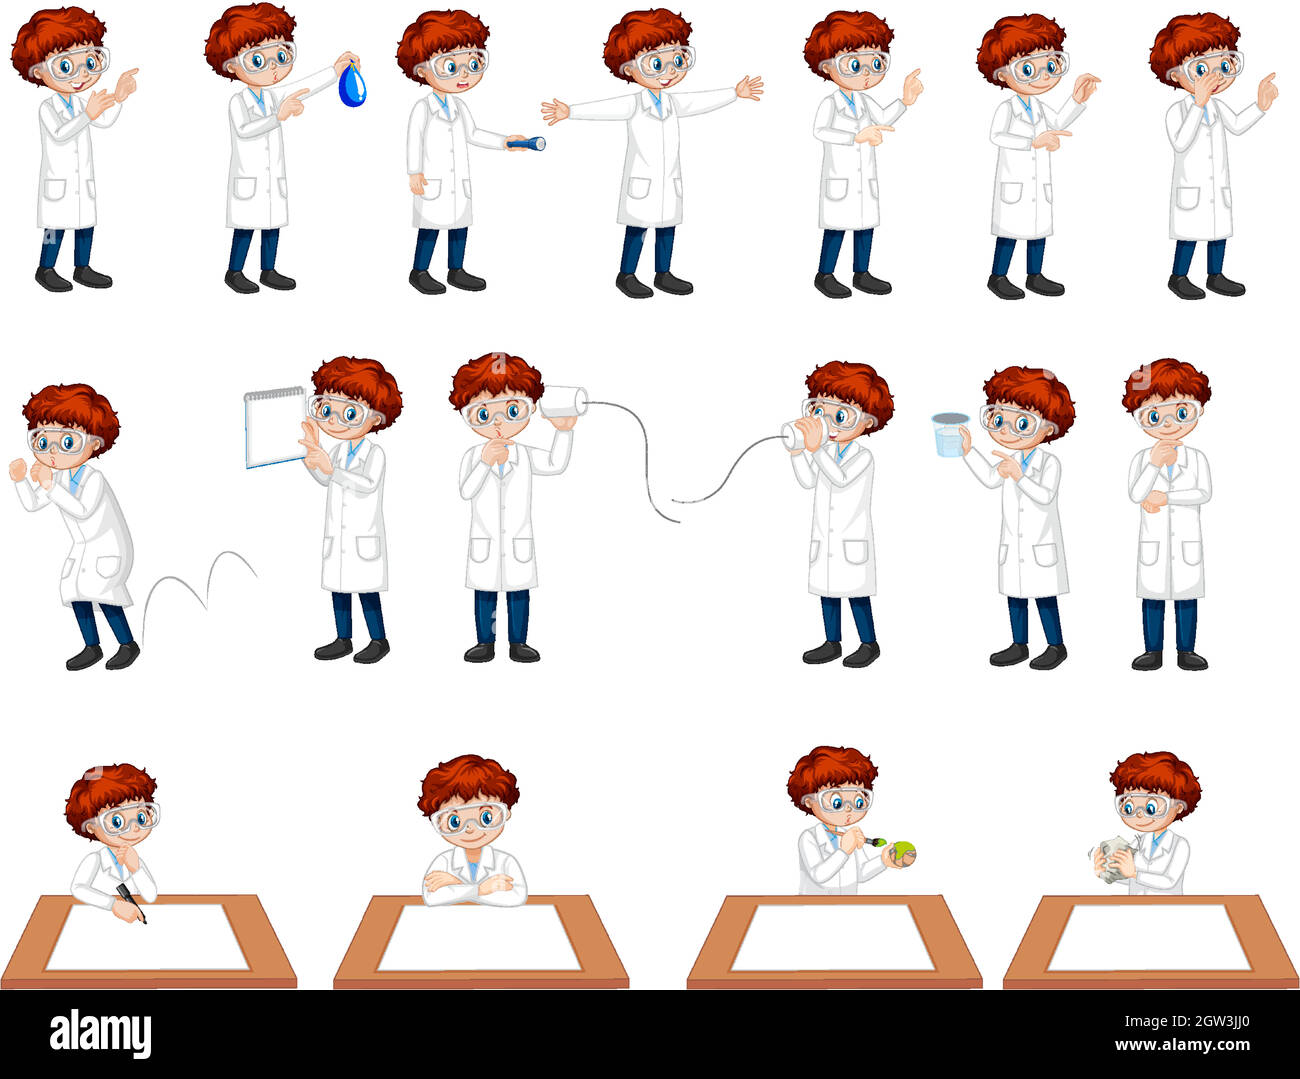 Ensemble d'un garçon scientifique dans différentes poses personnage de dessin animé Illustration de Vecteur